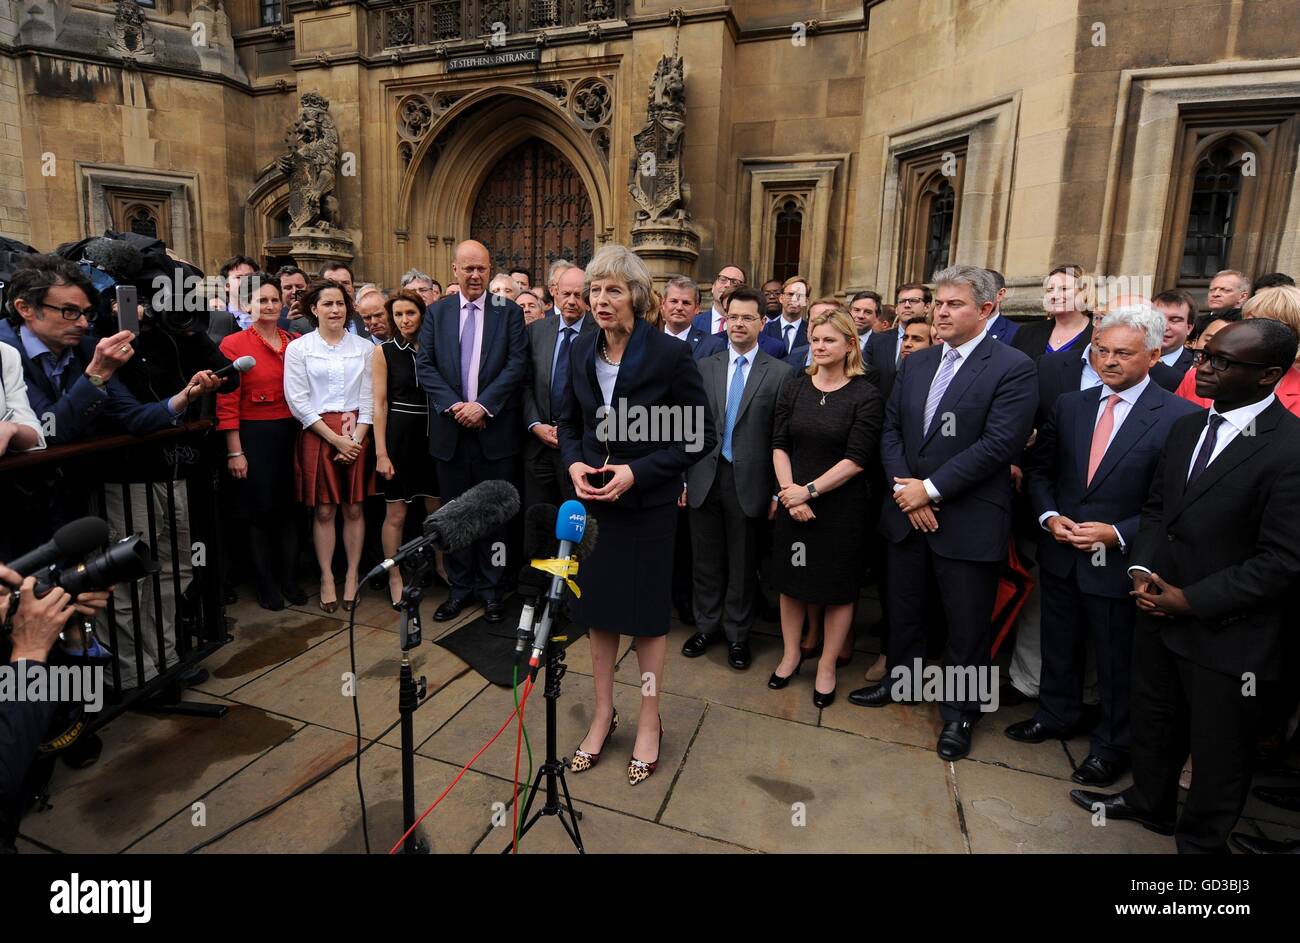 Theresa kann außerhalb der Houses of Parliament, Westminster, London, nachdem sie ihren Platz als zweite weibliche Premierministerin Großbritanniens durch die Überraschung Rückzug der einzige Rivalin im Kampf um David Cameron erfolgreich gesichert. Stockfoto